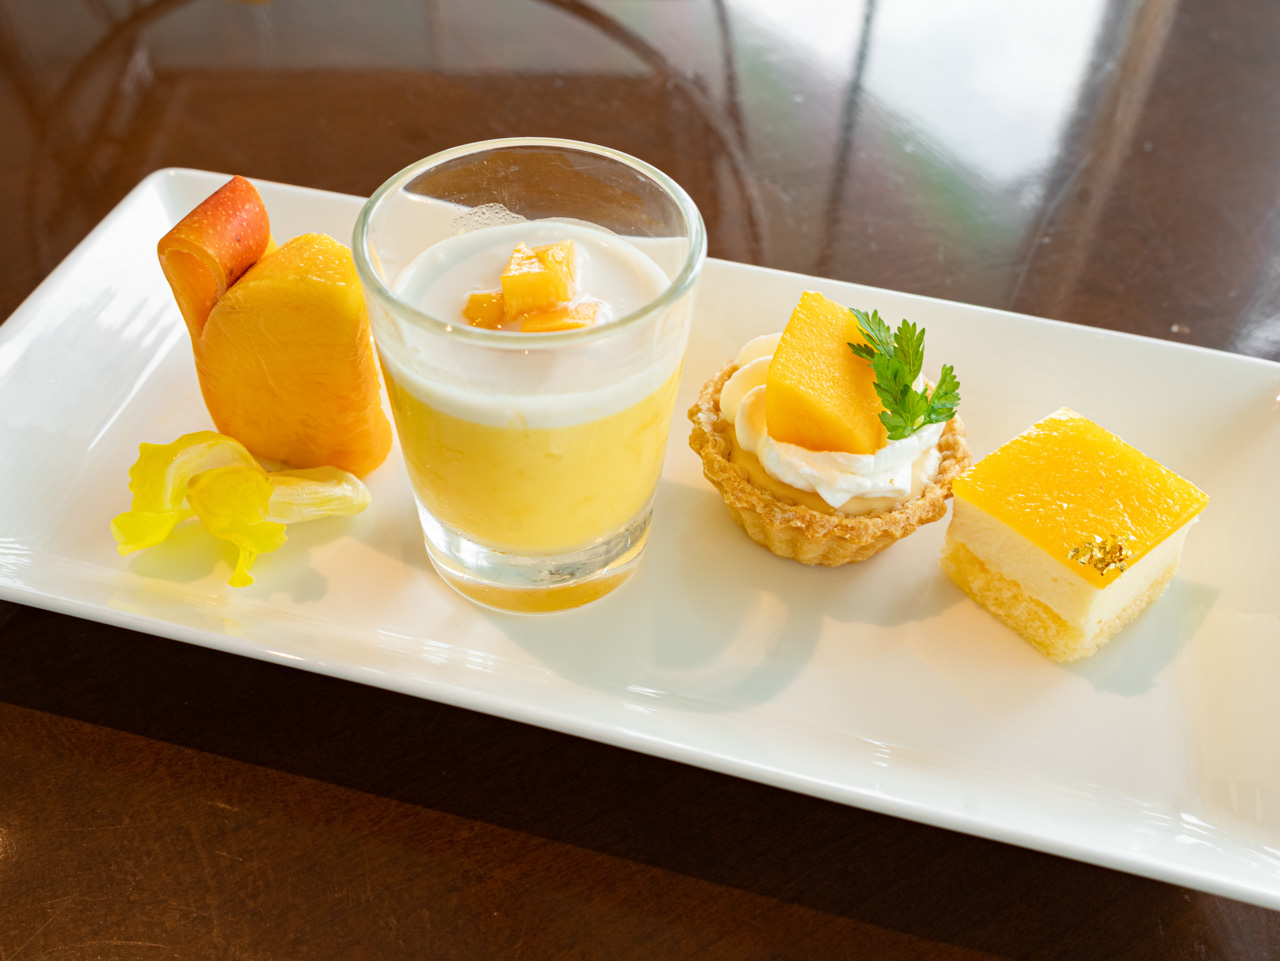 左から「フレッシュマンゴー」「マンゴープリン」「レモンとマンゴーのタルト」「マンゴーのレアチーズケーキ」。